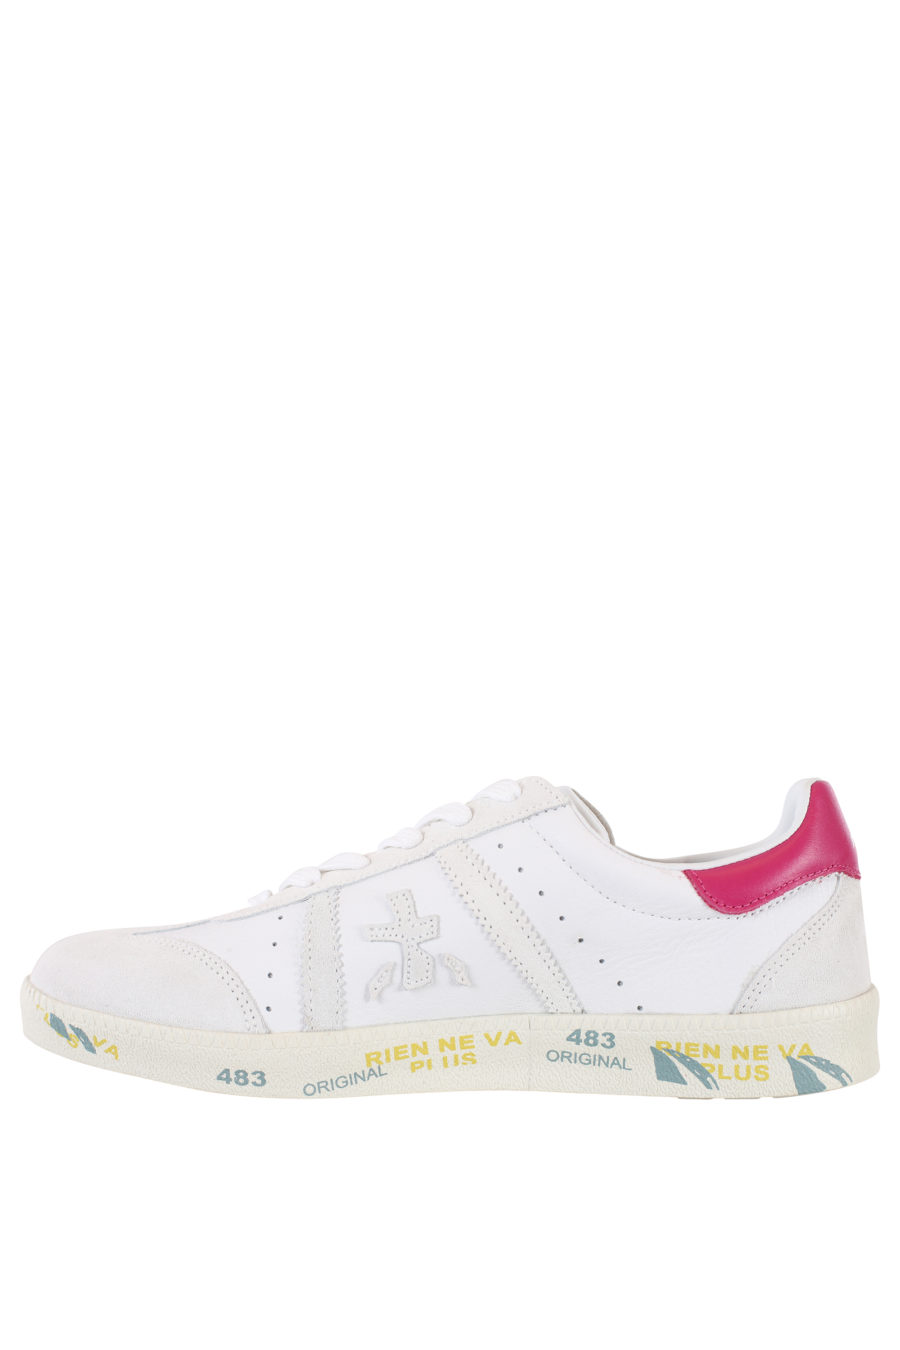 Zapatillas blancas con detalle rosa "Bonnied" - IMG 2186